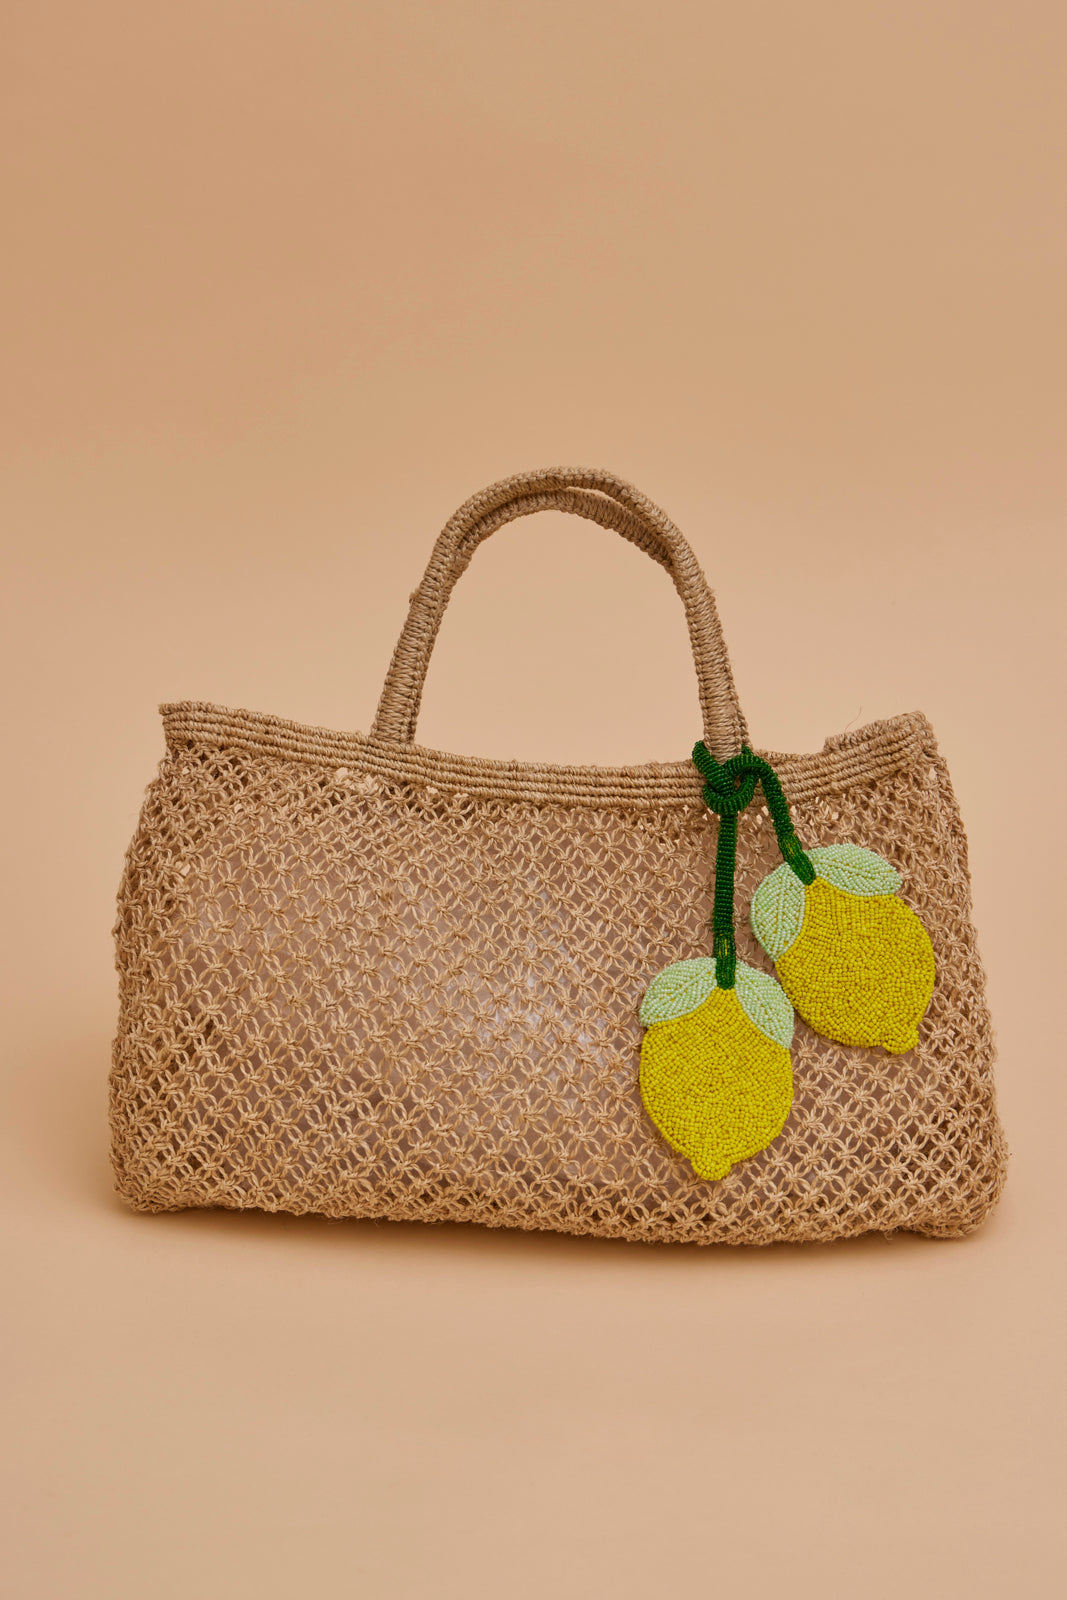 Beaded Bag Charm - Lemon